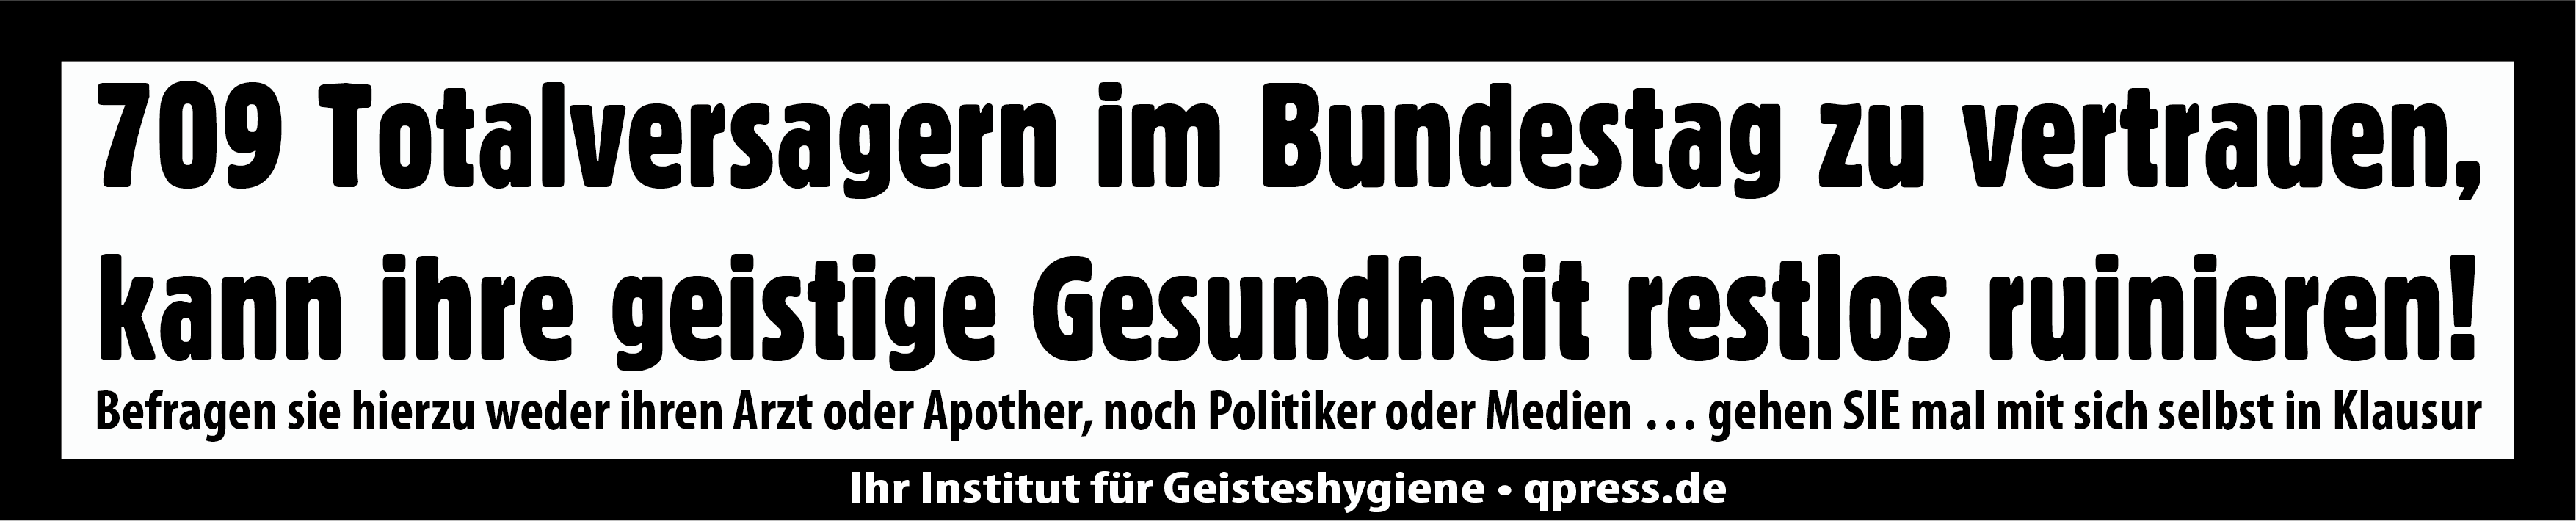 709 Totalversager Bundestag Vertrauen geistige Gesundheit